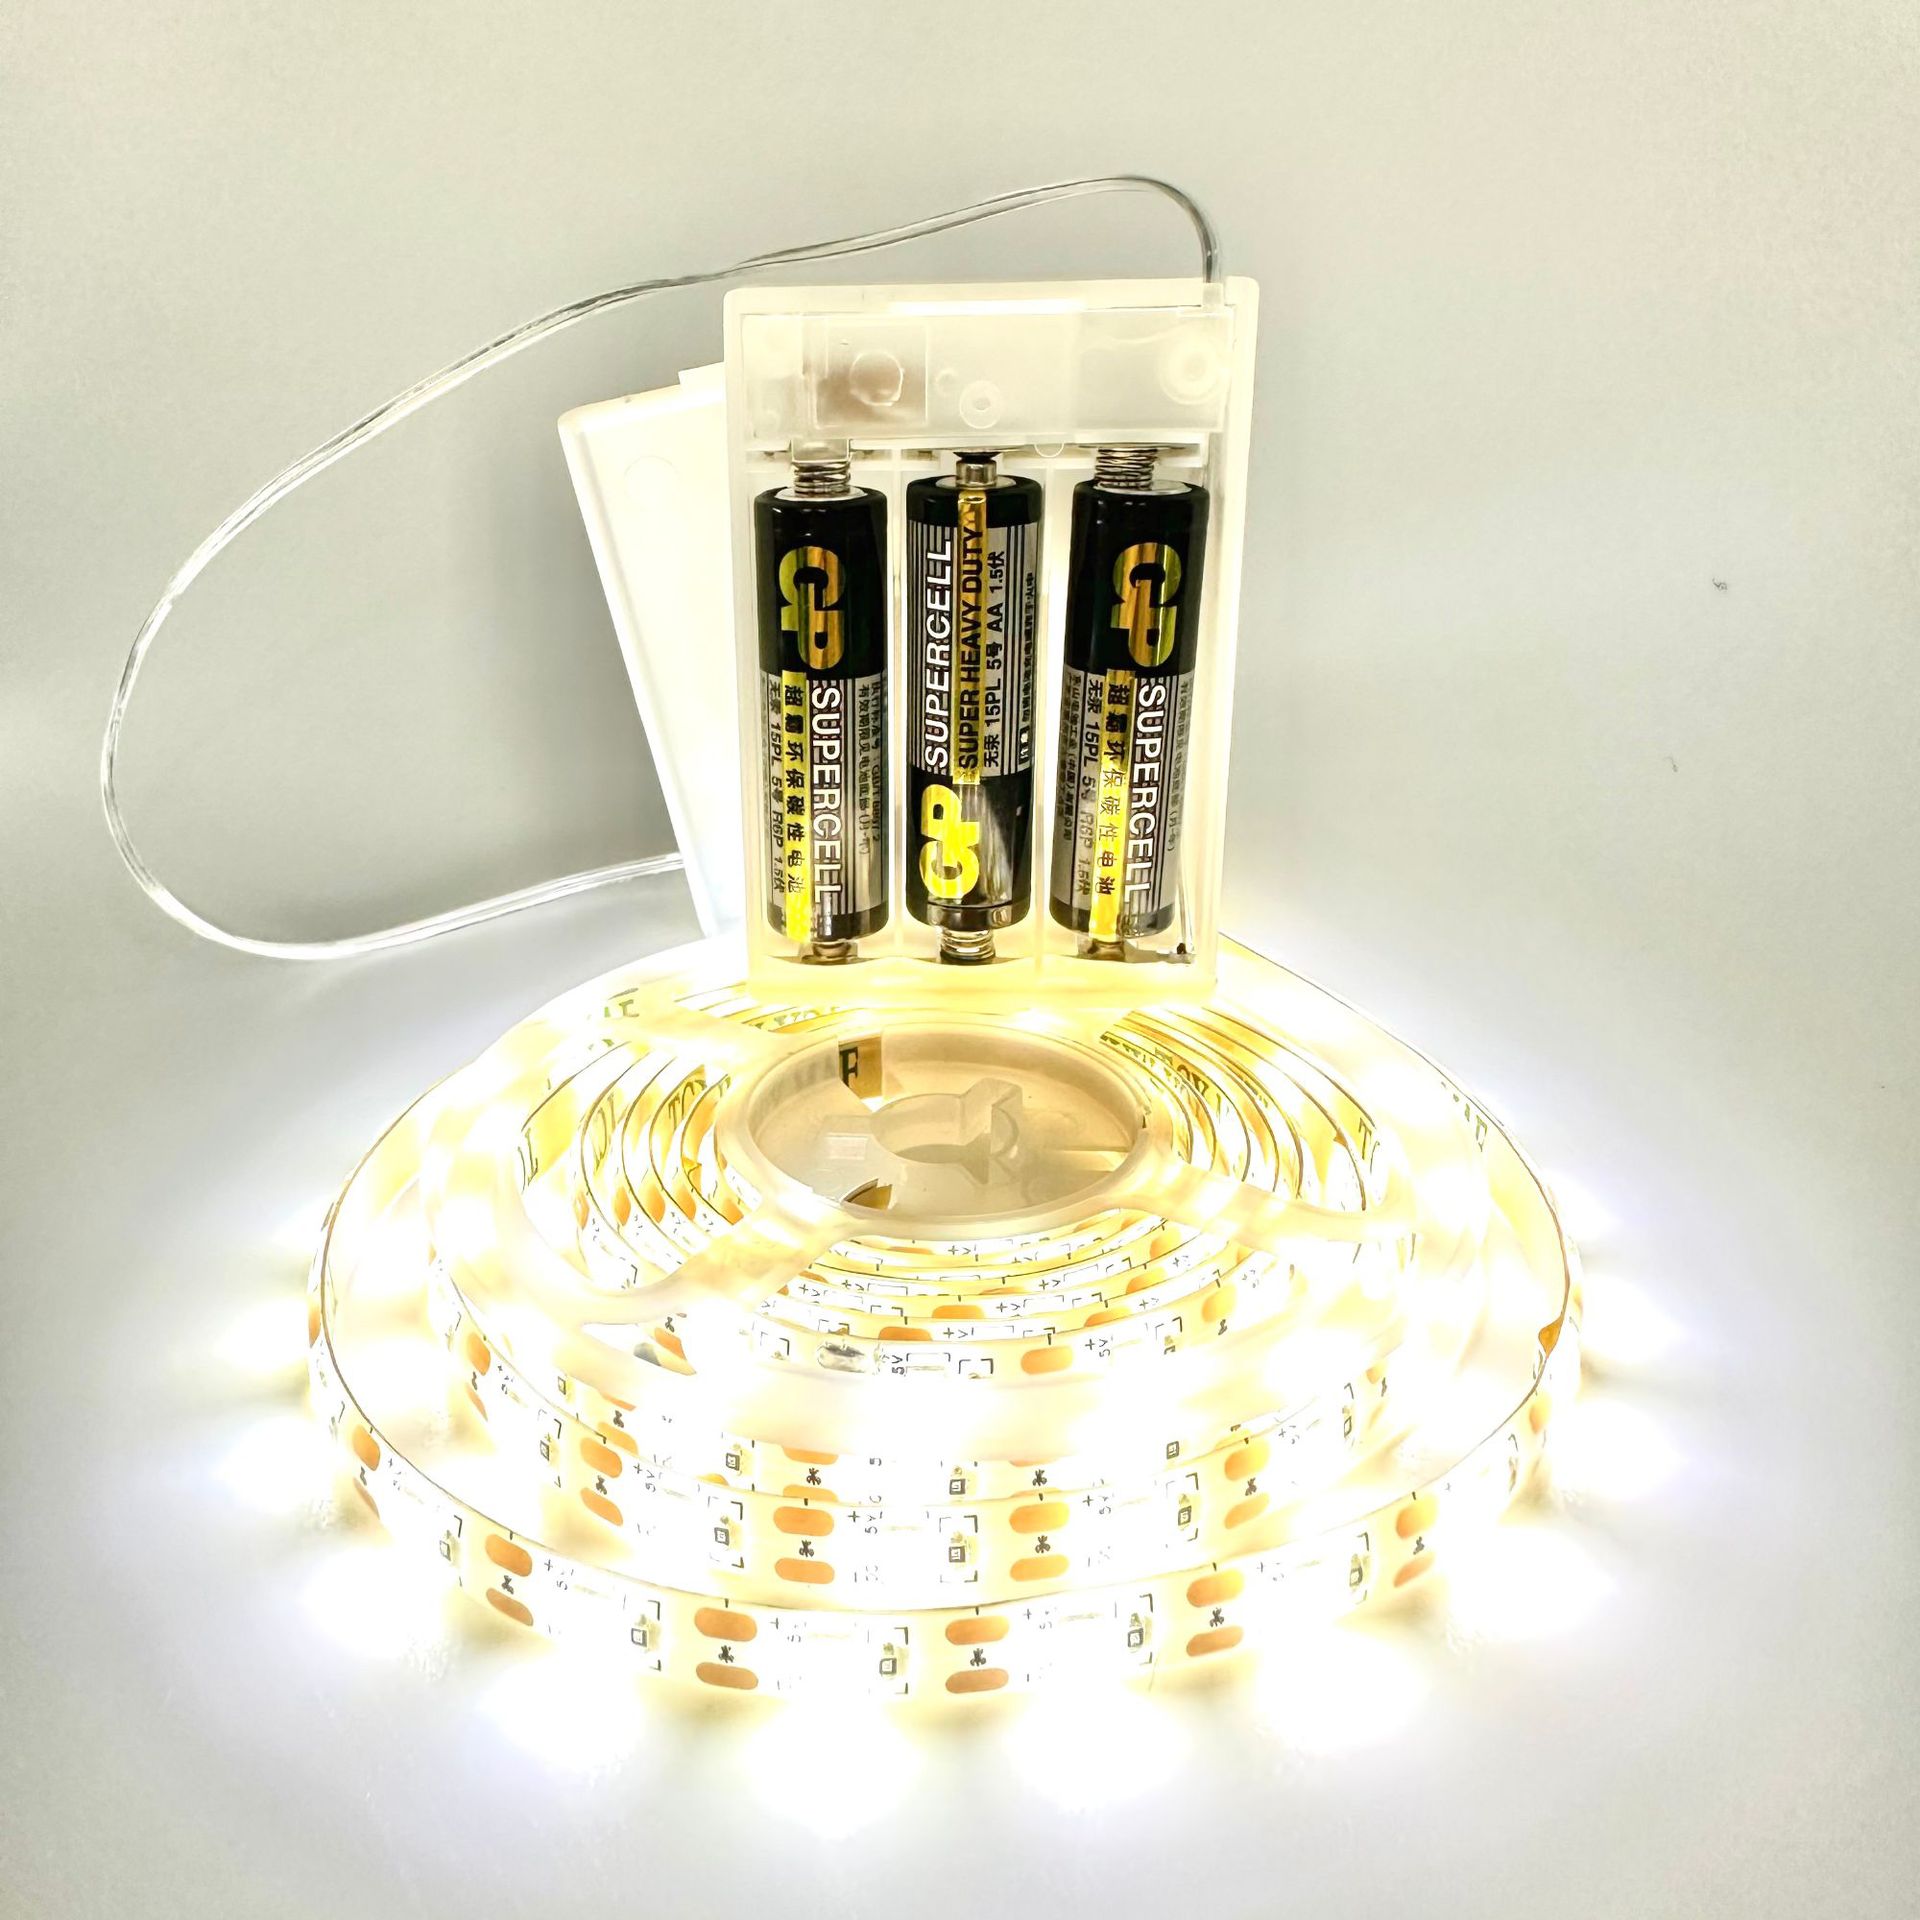 Battery LED STRIP LIGHT